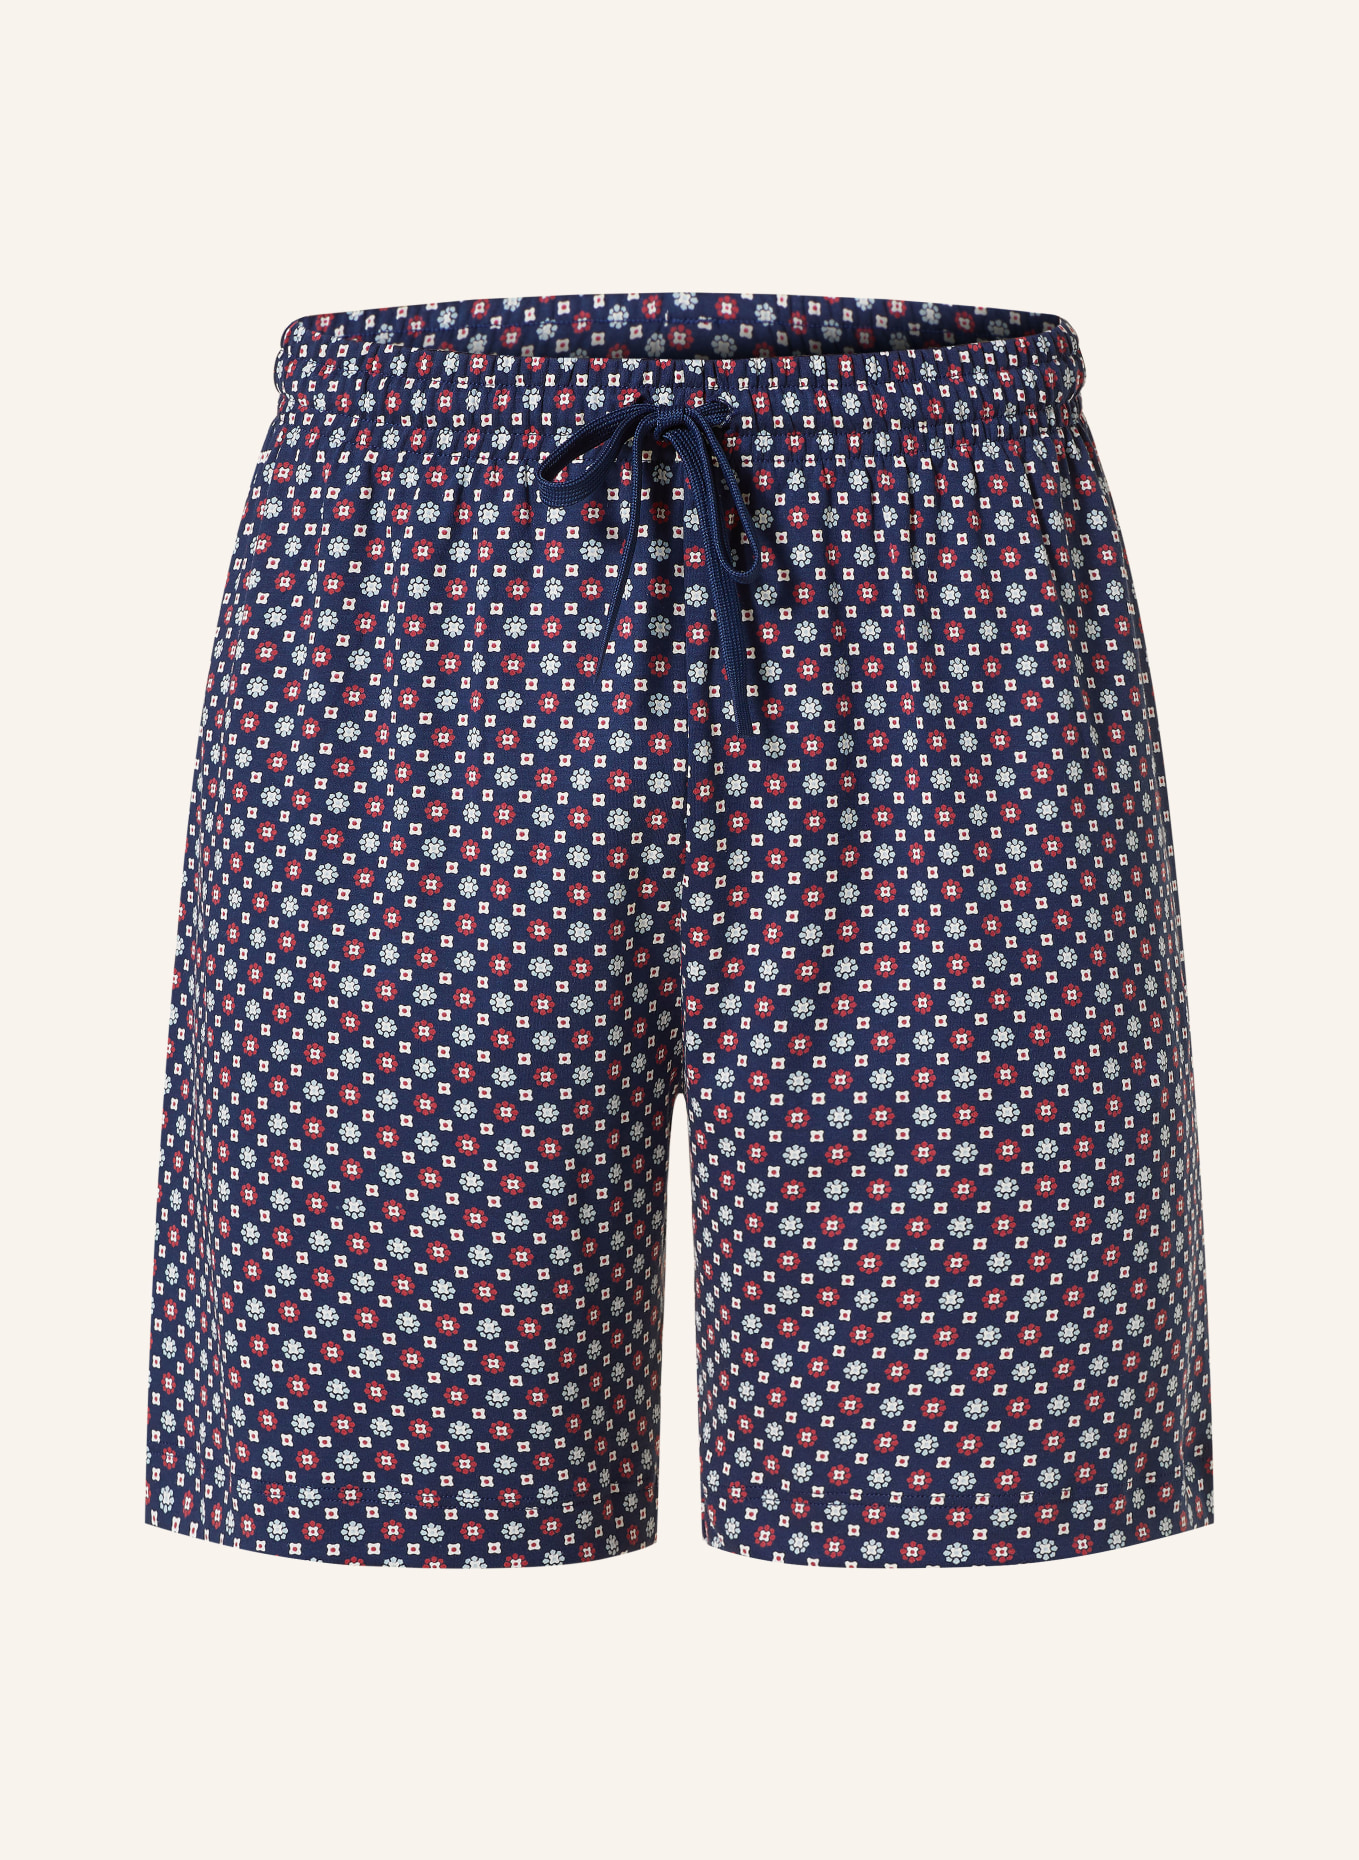 mey Pajama shorts TIE MINIMAL series, Color: BLUE/ DARK RED/ WHITE (Image 1)